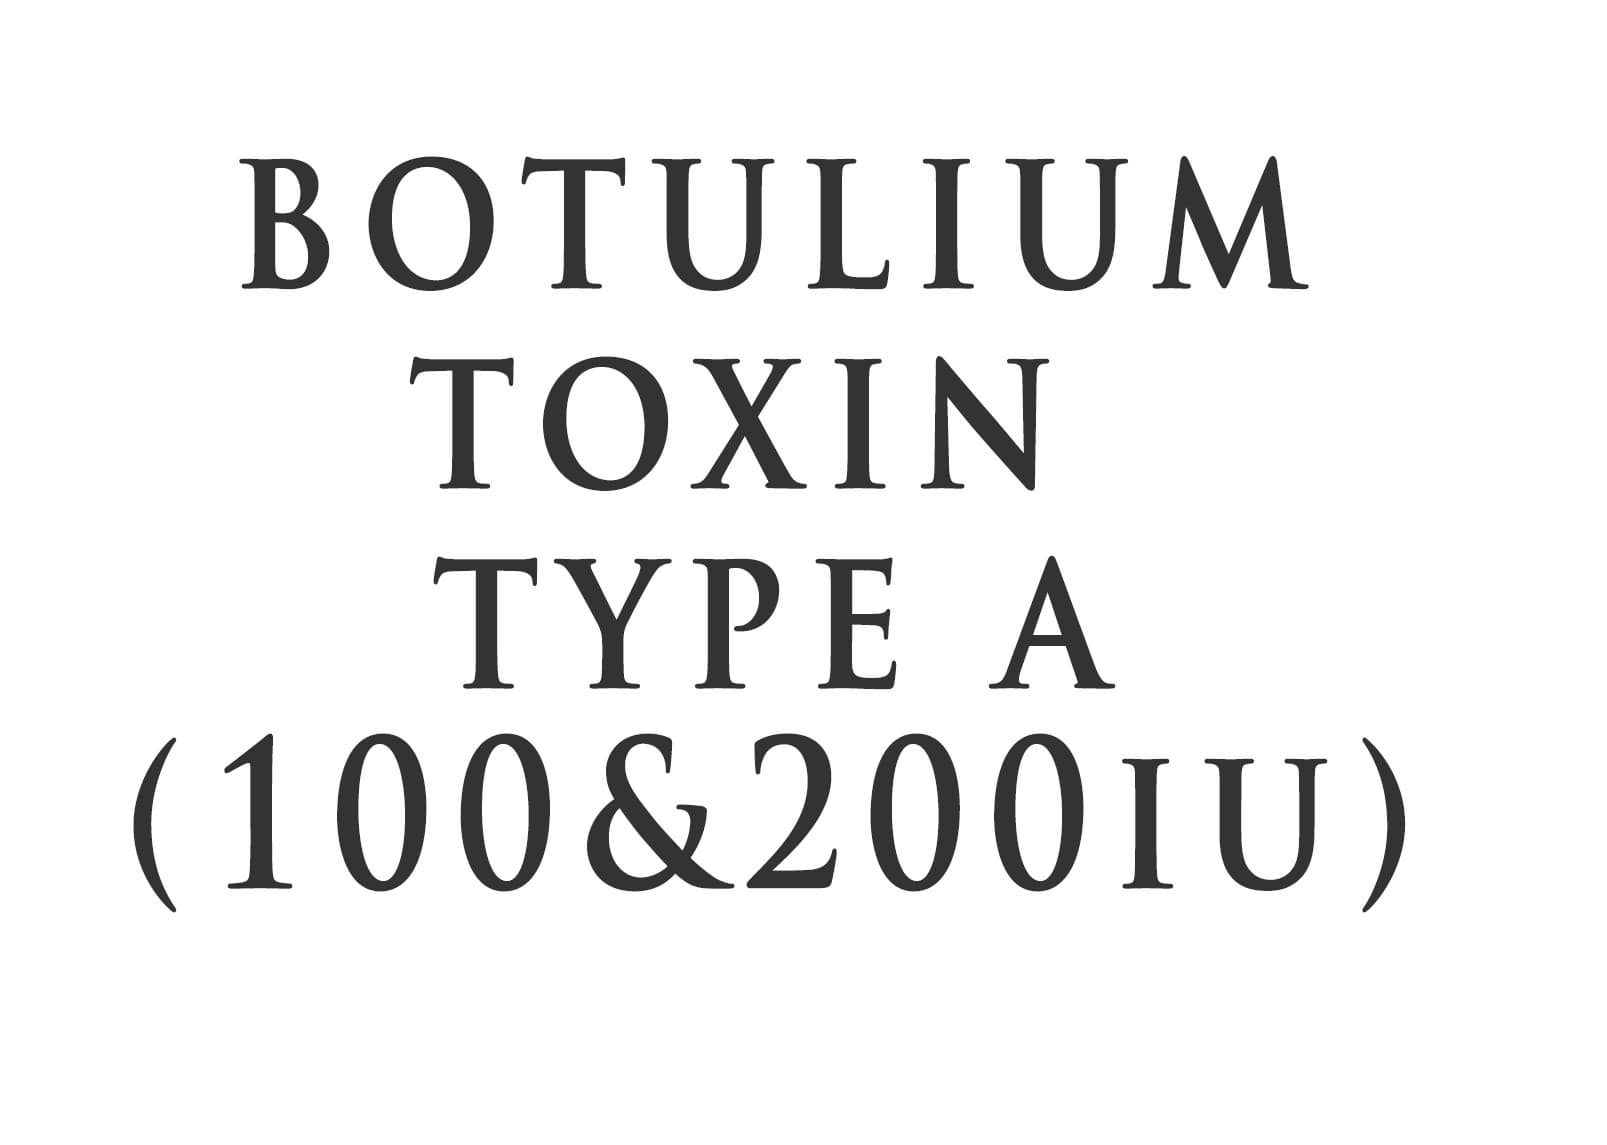 Botulium Toxin Type A